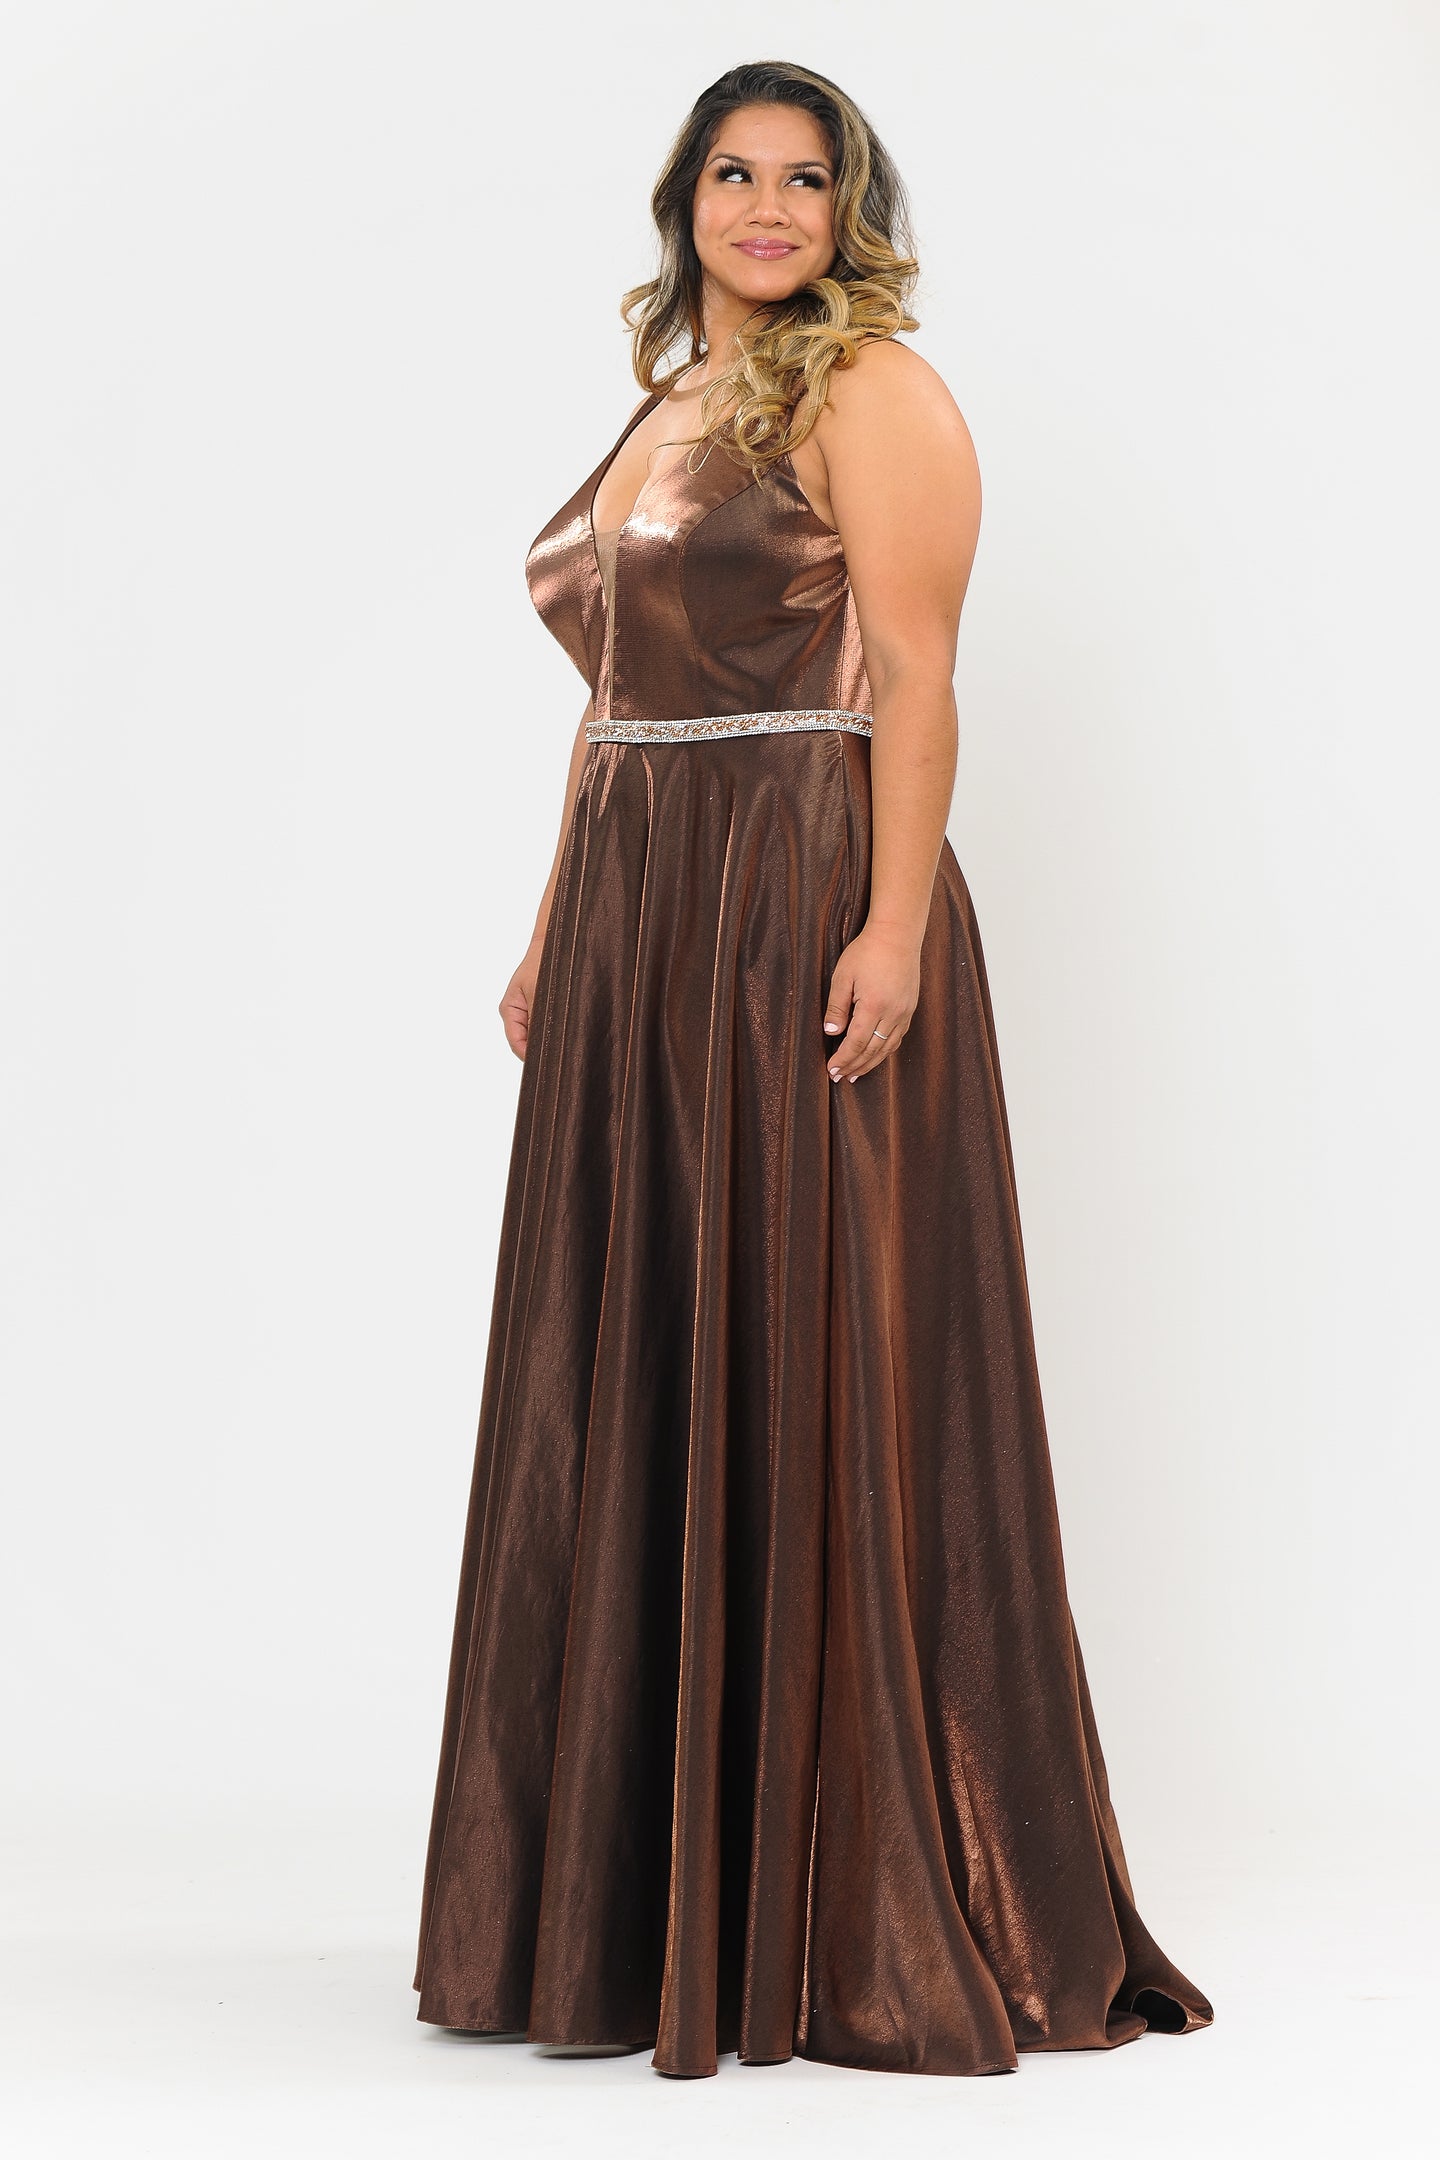 Plus Size Shinny Dress - LAYW1062